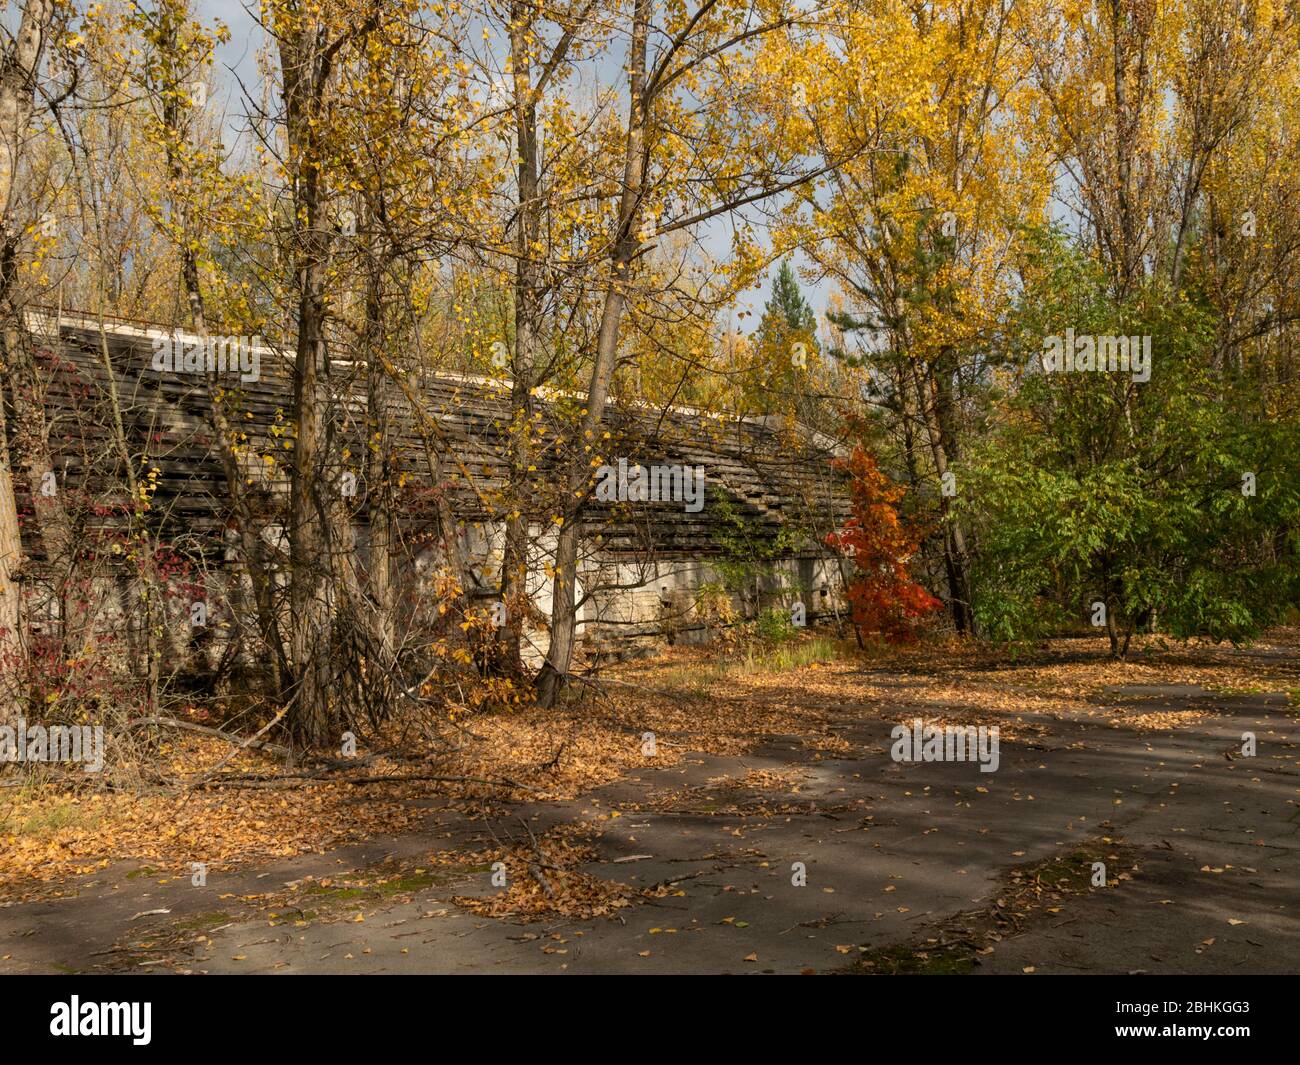 Tribuna abbandonata dello stadio Avangard, presa dalla natura nella città fantasma Pripyat nella zona di esclusione di Chernobyl. Ucraina Foto Stock